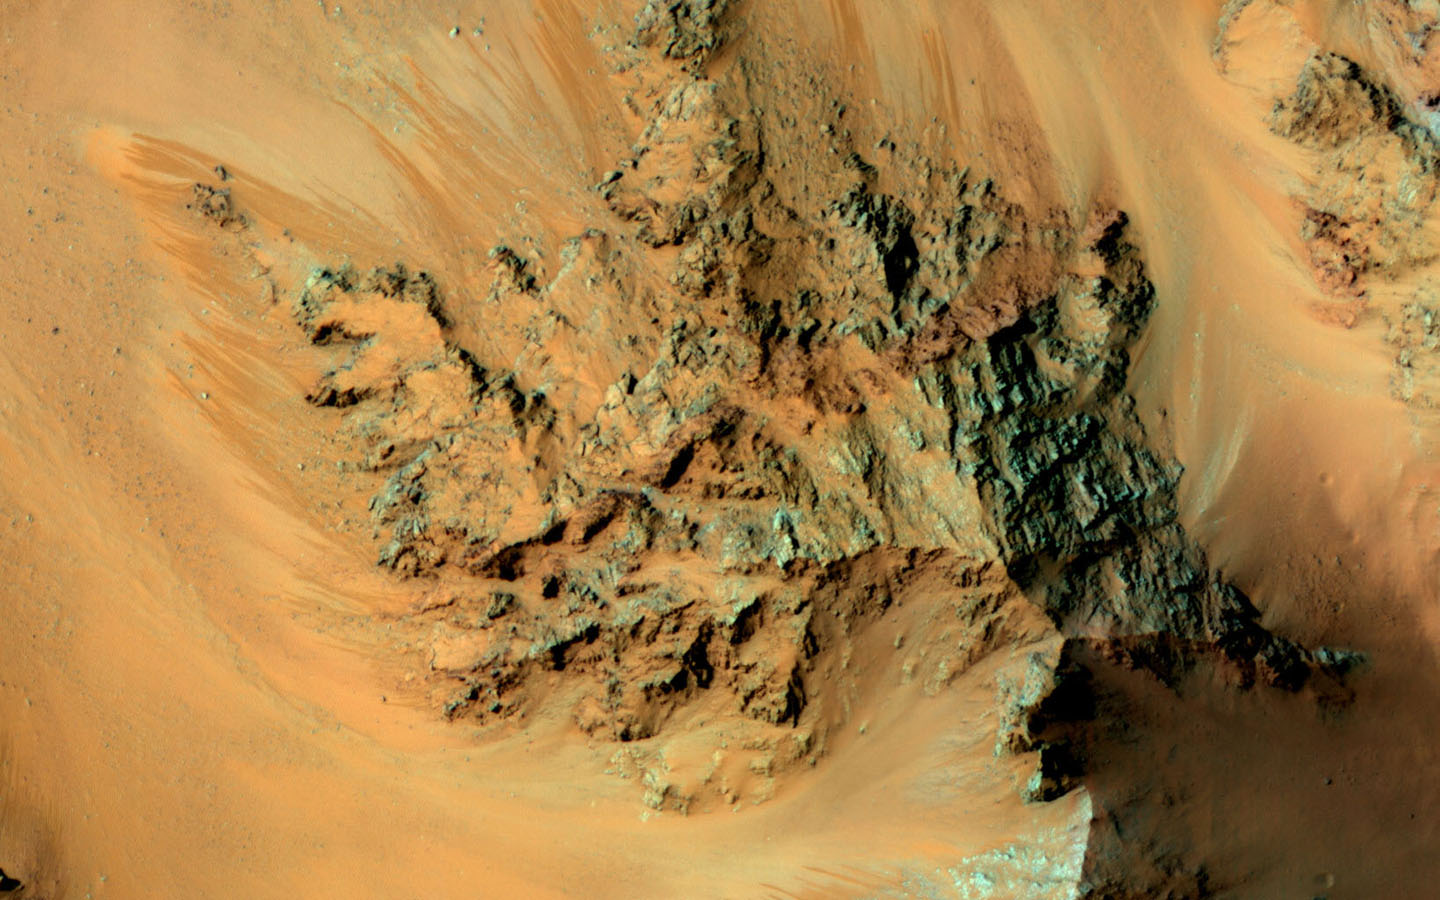 Фото дня от НАСА: сезонные потоки в кратере Hale